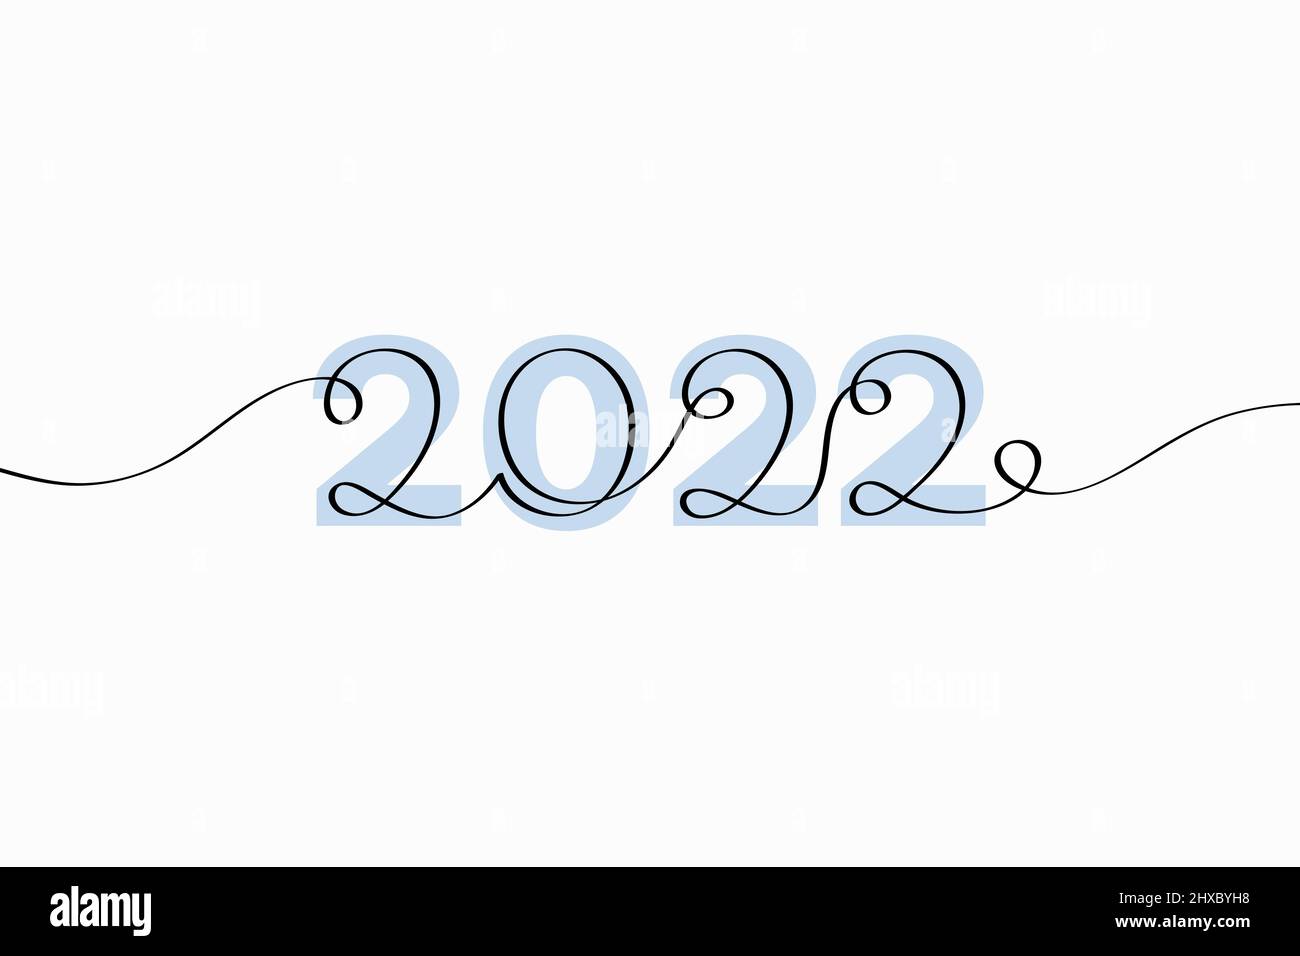 Das Jahr 2022 abstrakte Schriftzüge. Vektordarstellung kreativer Typografie mit durchgehendem, von Hand gezeichneter Text, isoliert auf weißem Hintergrund Stock Vektor